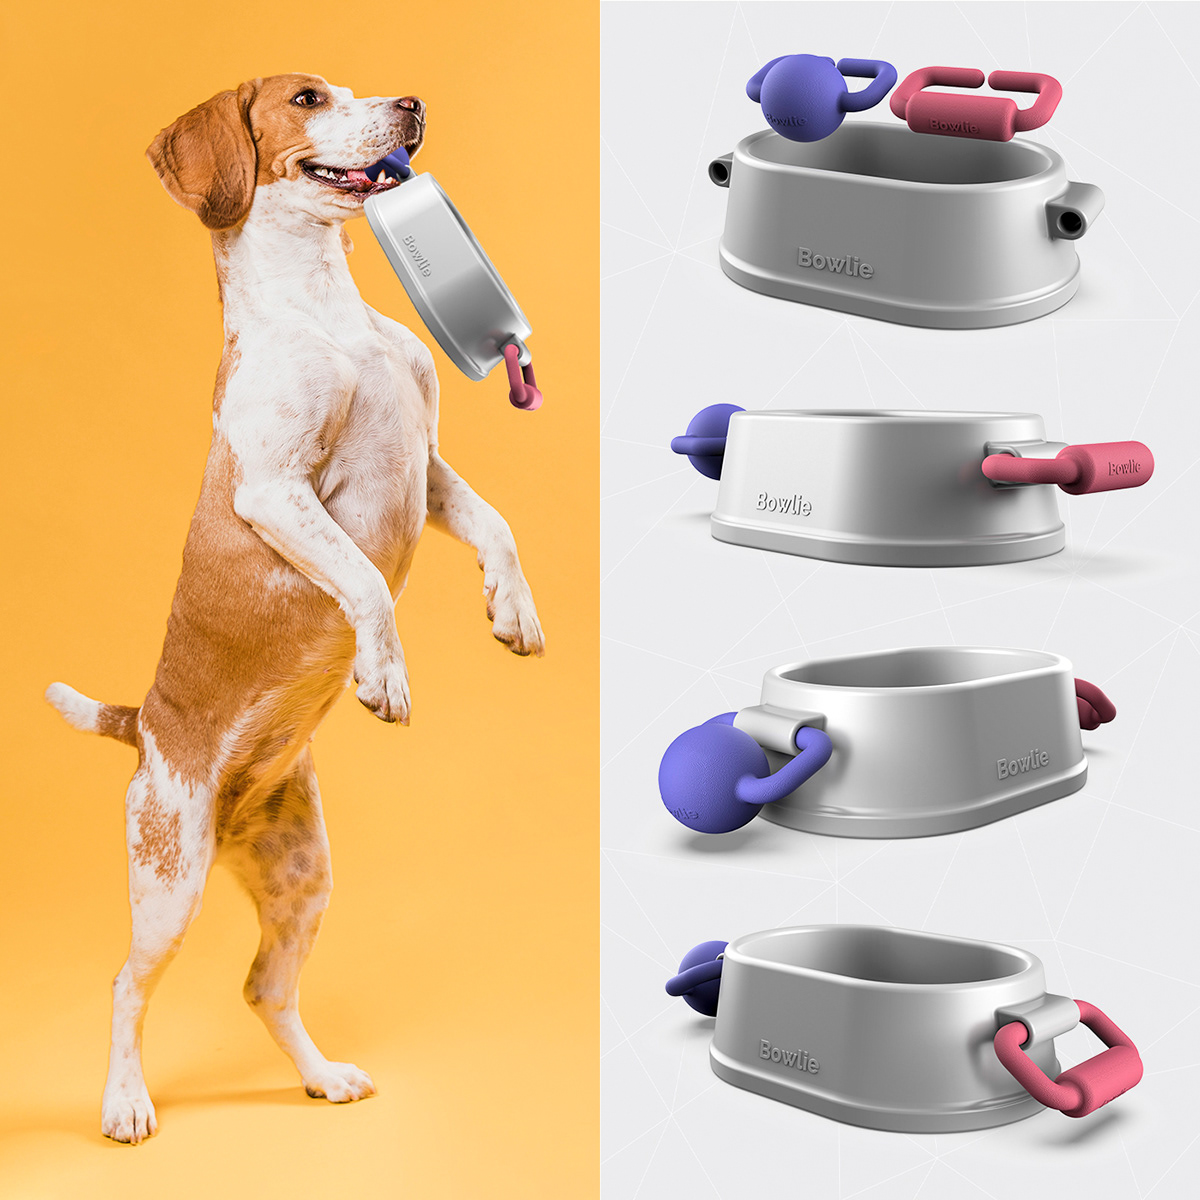 Cat dog dog bowl dog toy dogtoy industrialdesign Pet productdesign toy training